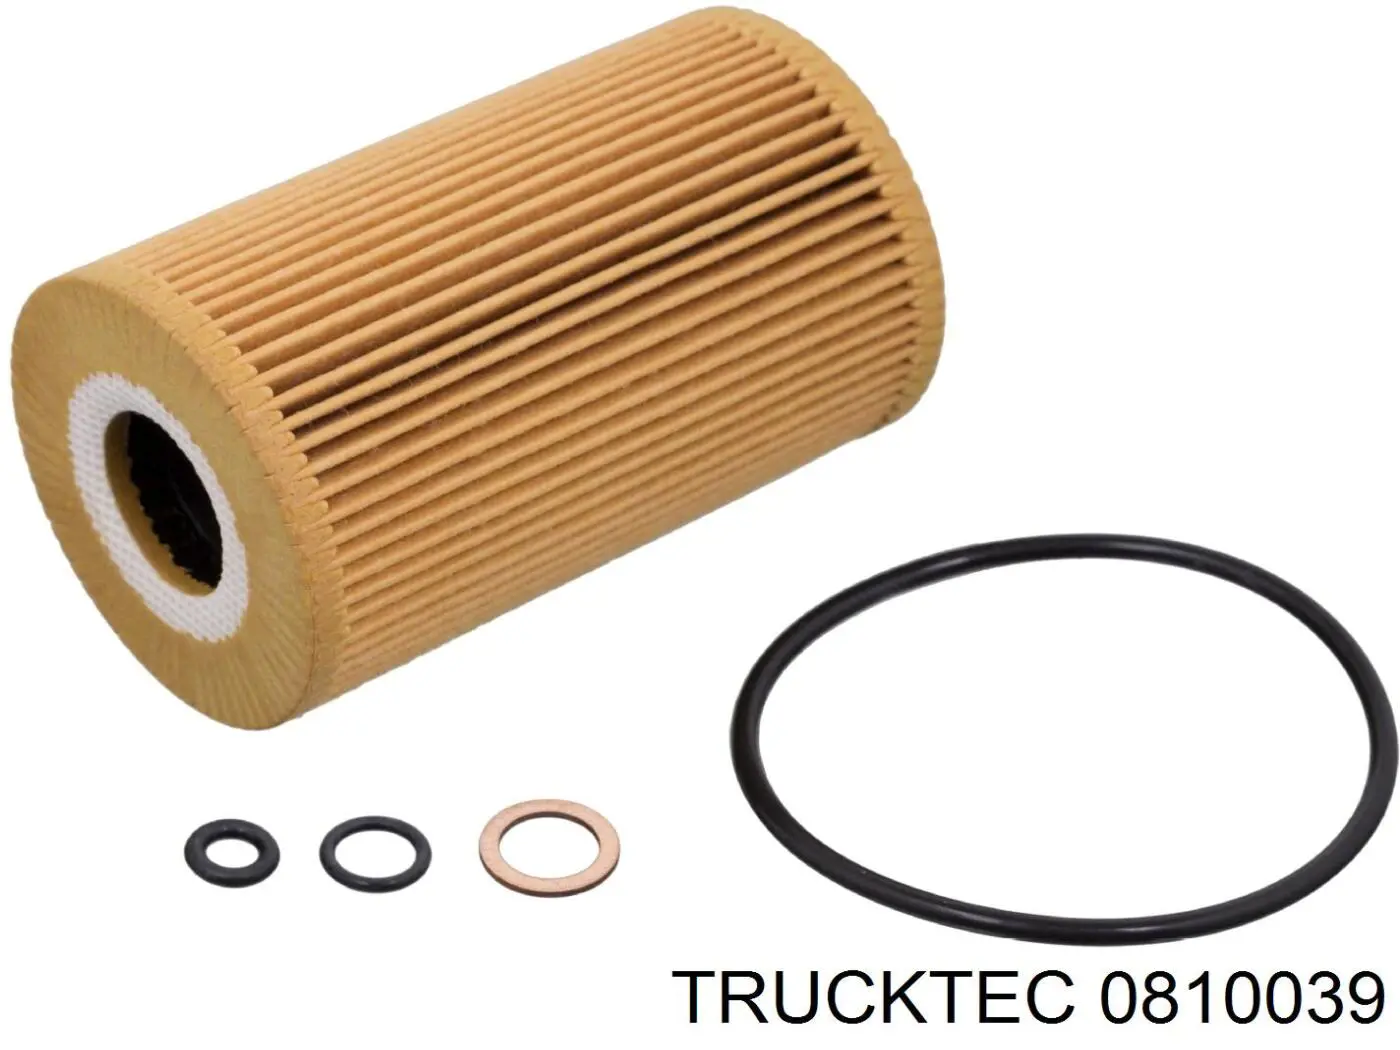 08.10.039 Trucktec junta, adaptador de filtro de aceite